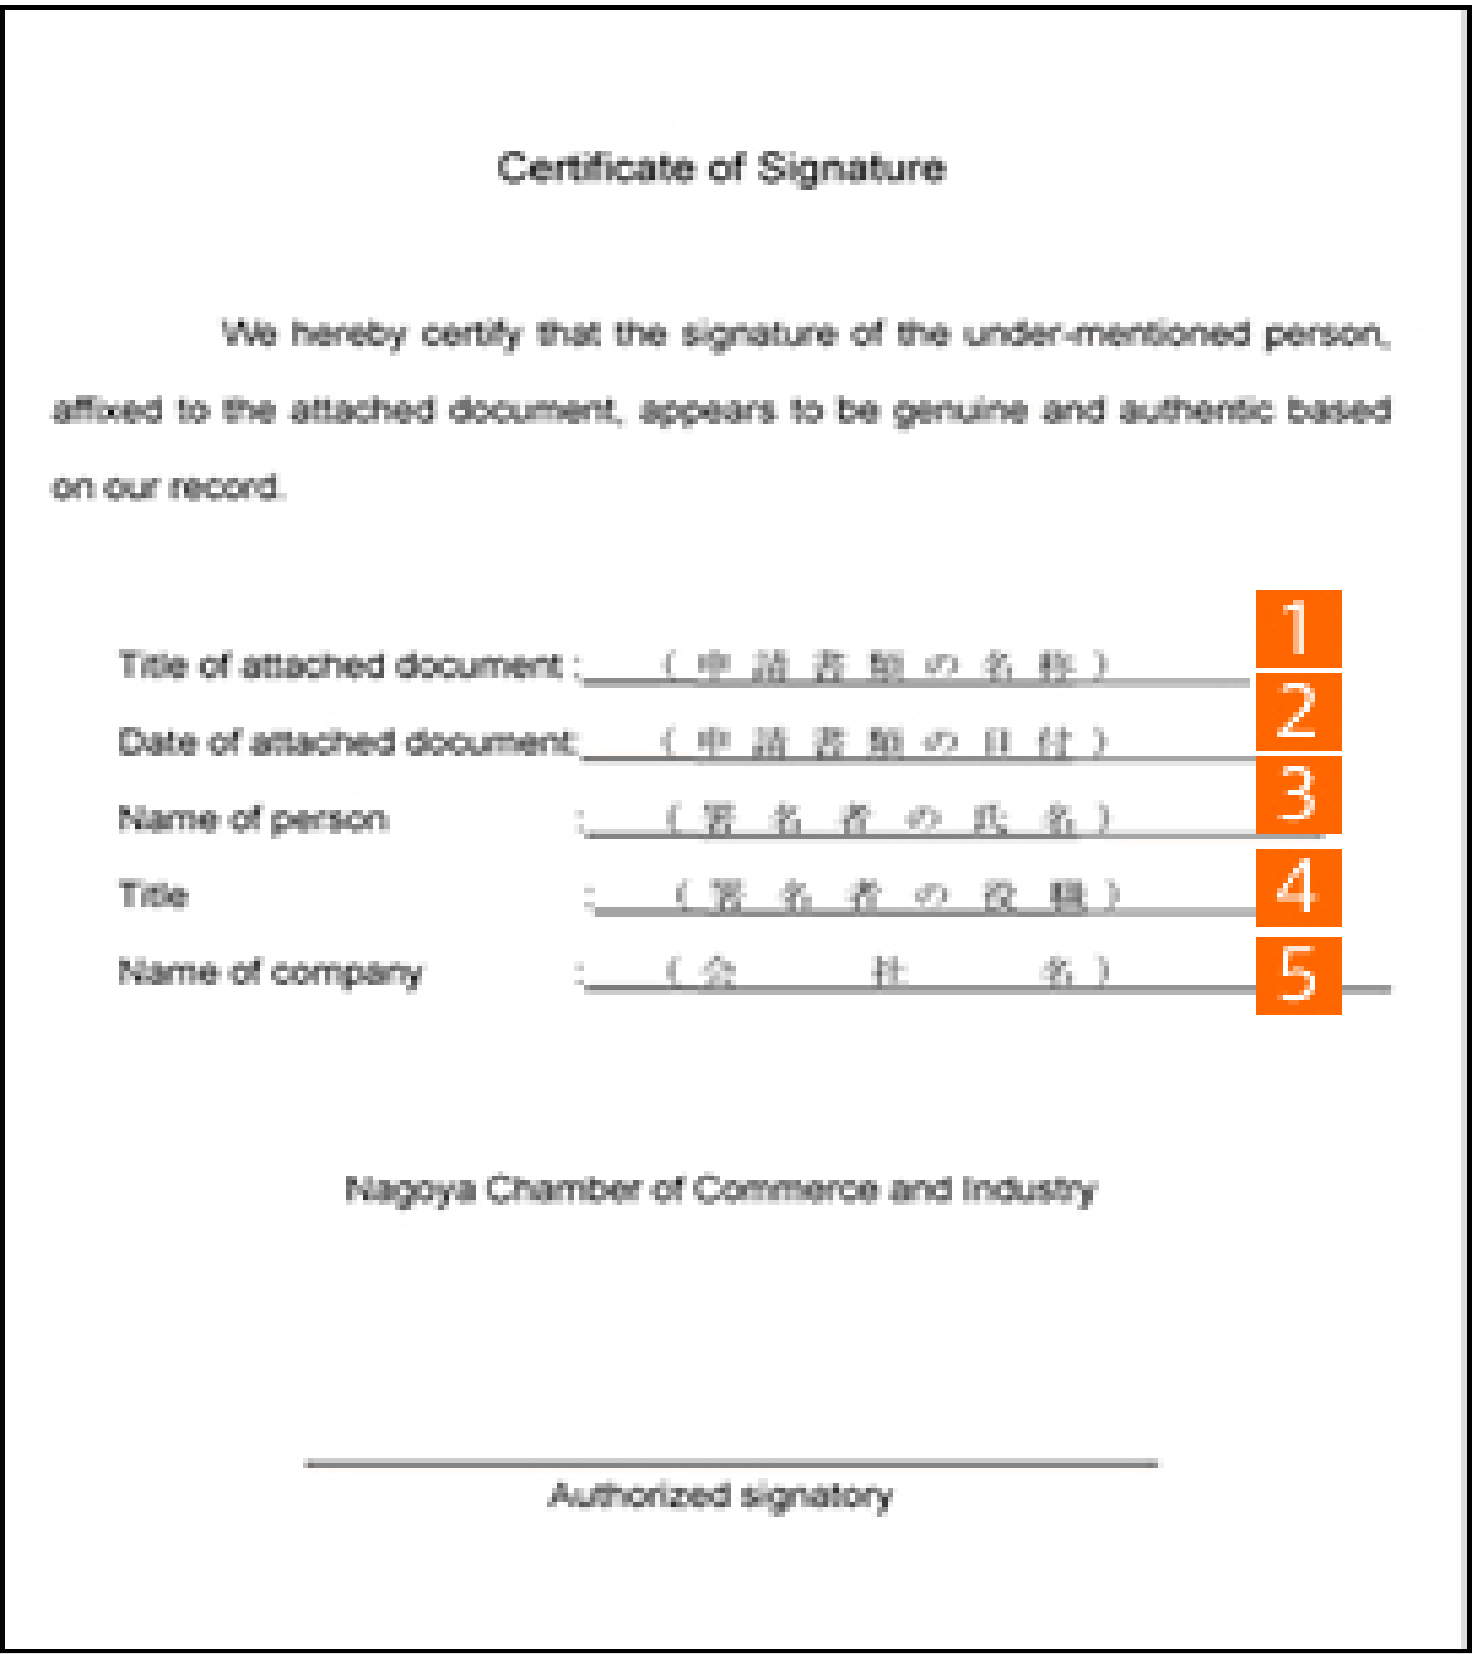 サイン指定様式の記載方法の画像1